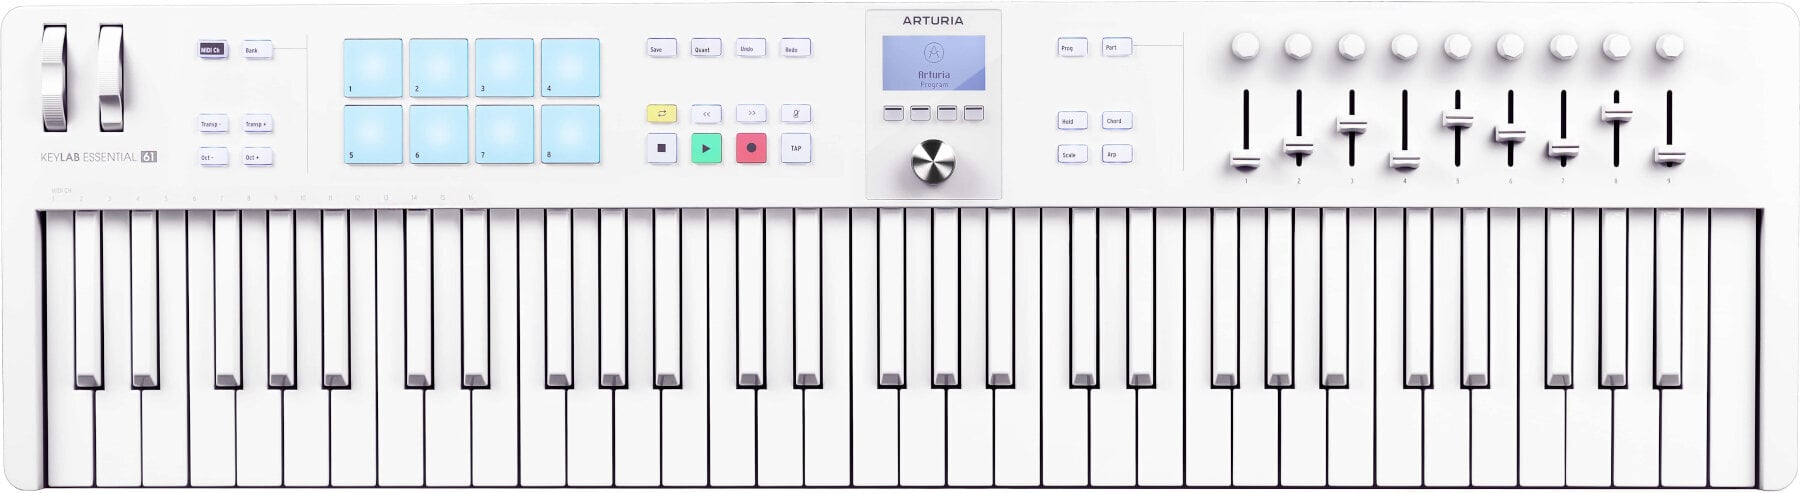 MIDI-Keyboard Arturia KeyLab Essential 61 mk3